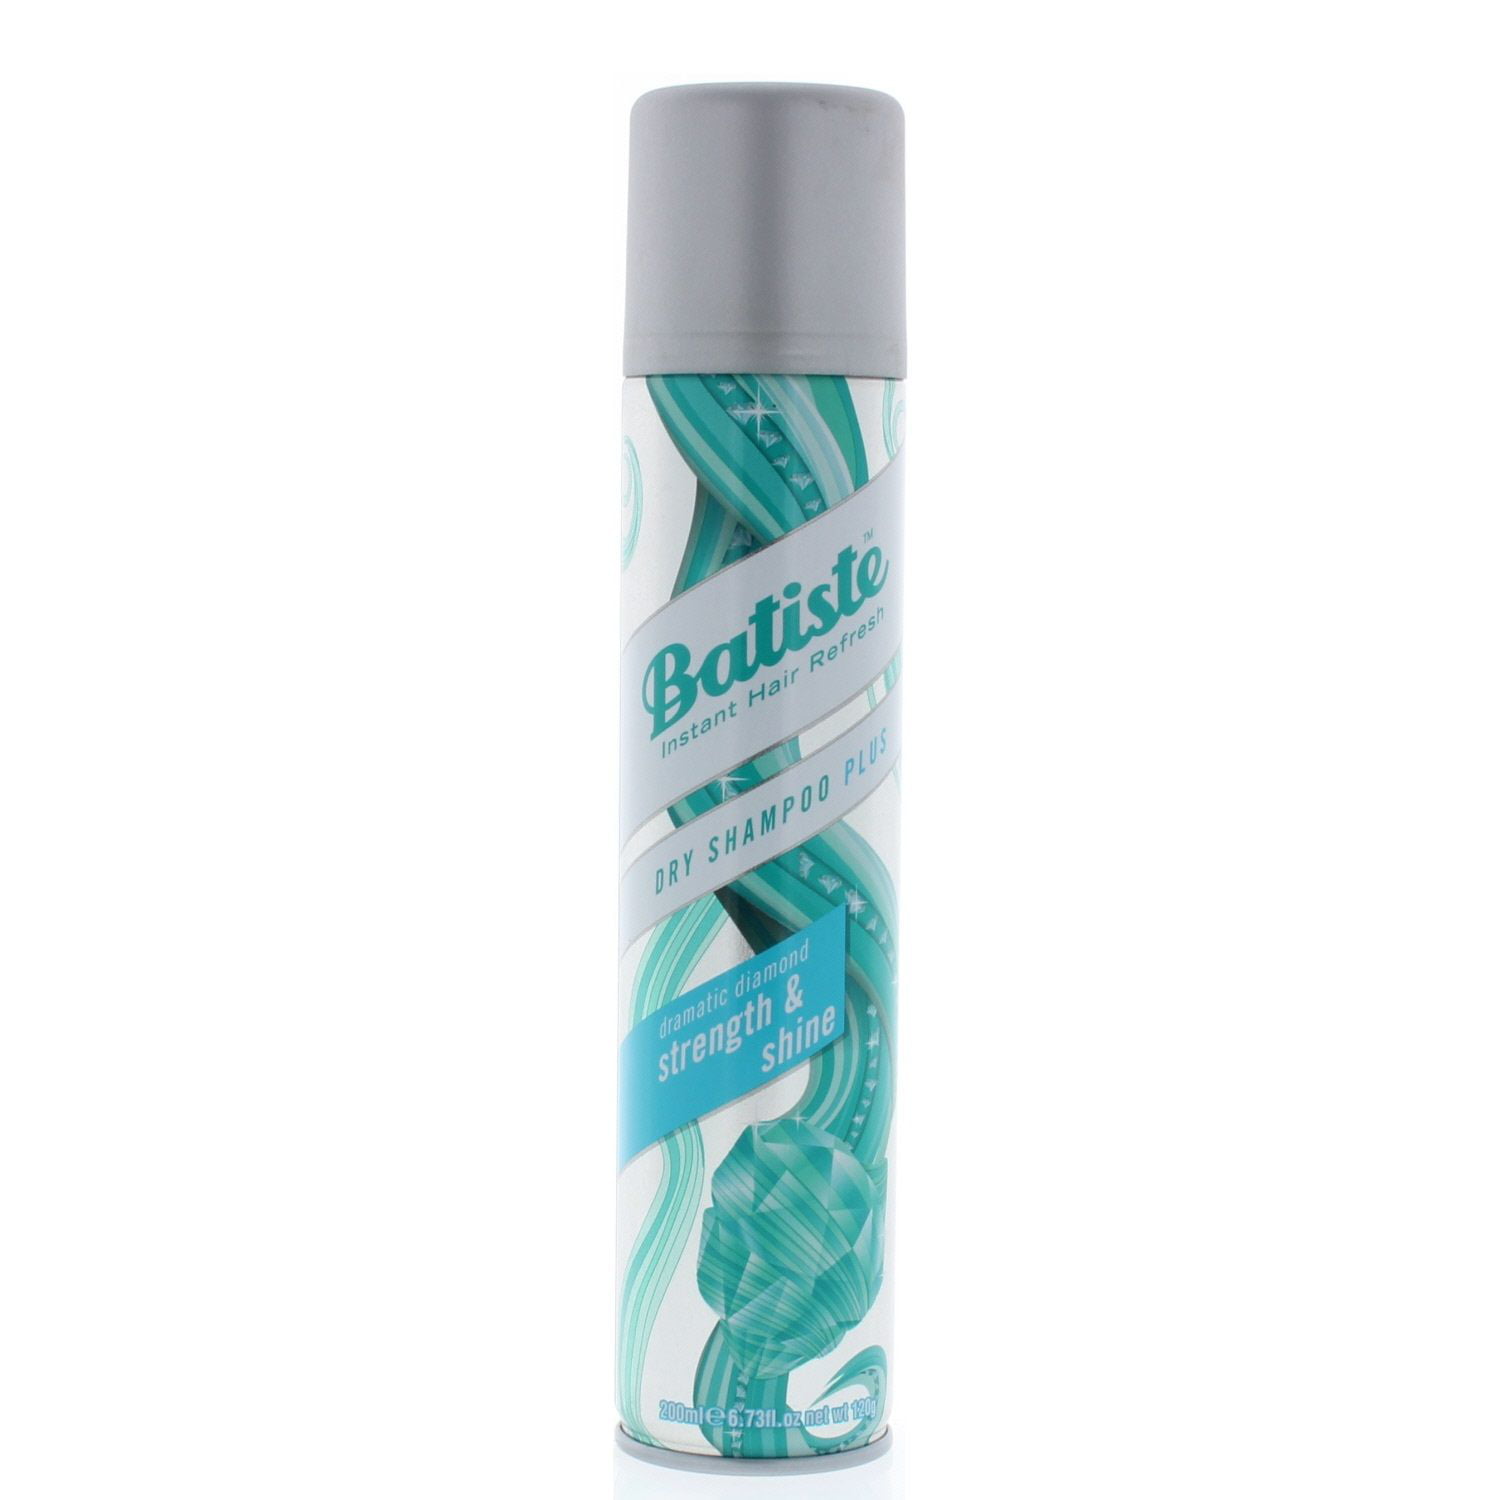 Batiste Dry Shampoo Shine 6.73oz/200ml - Walmart.com